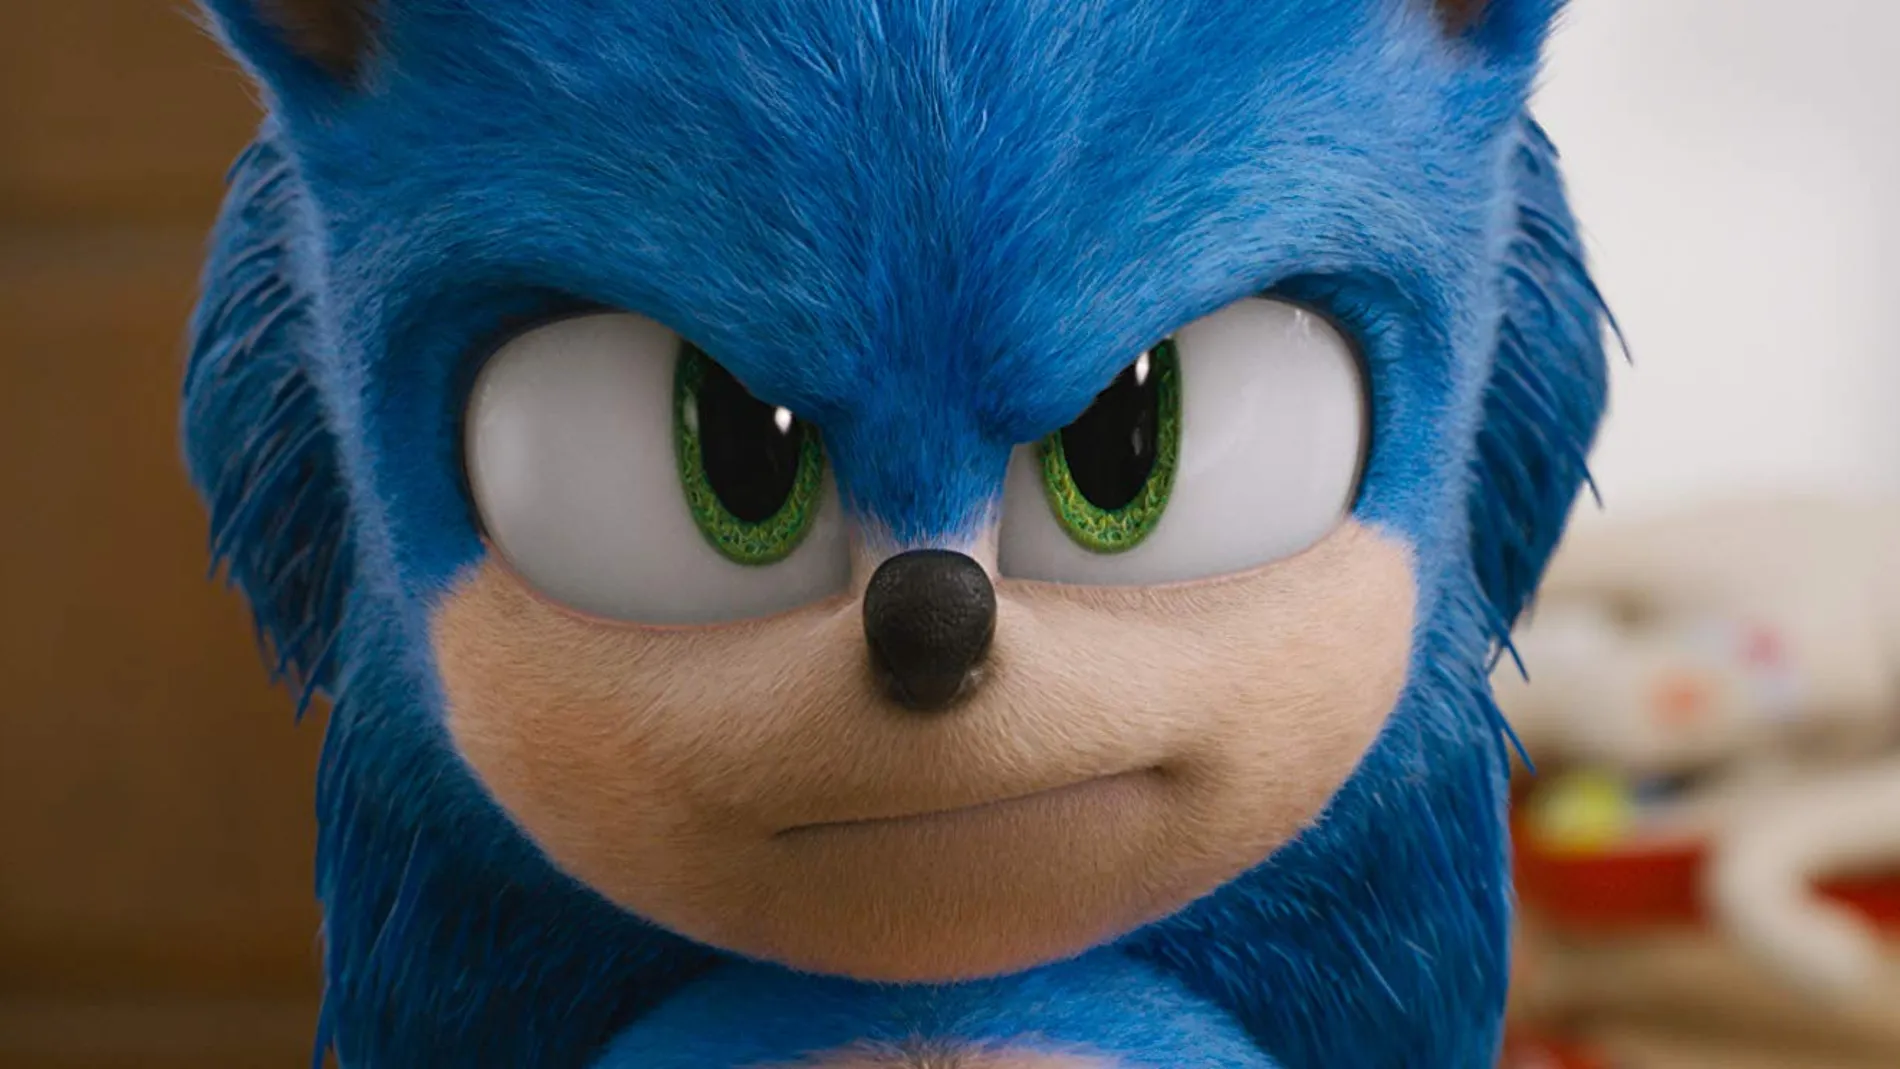 Crítica de “Sonic”: Corre, corre que te pillo ★★★✩✩